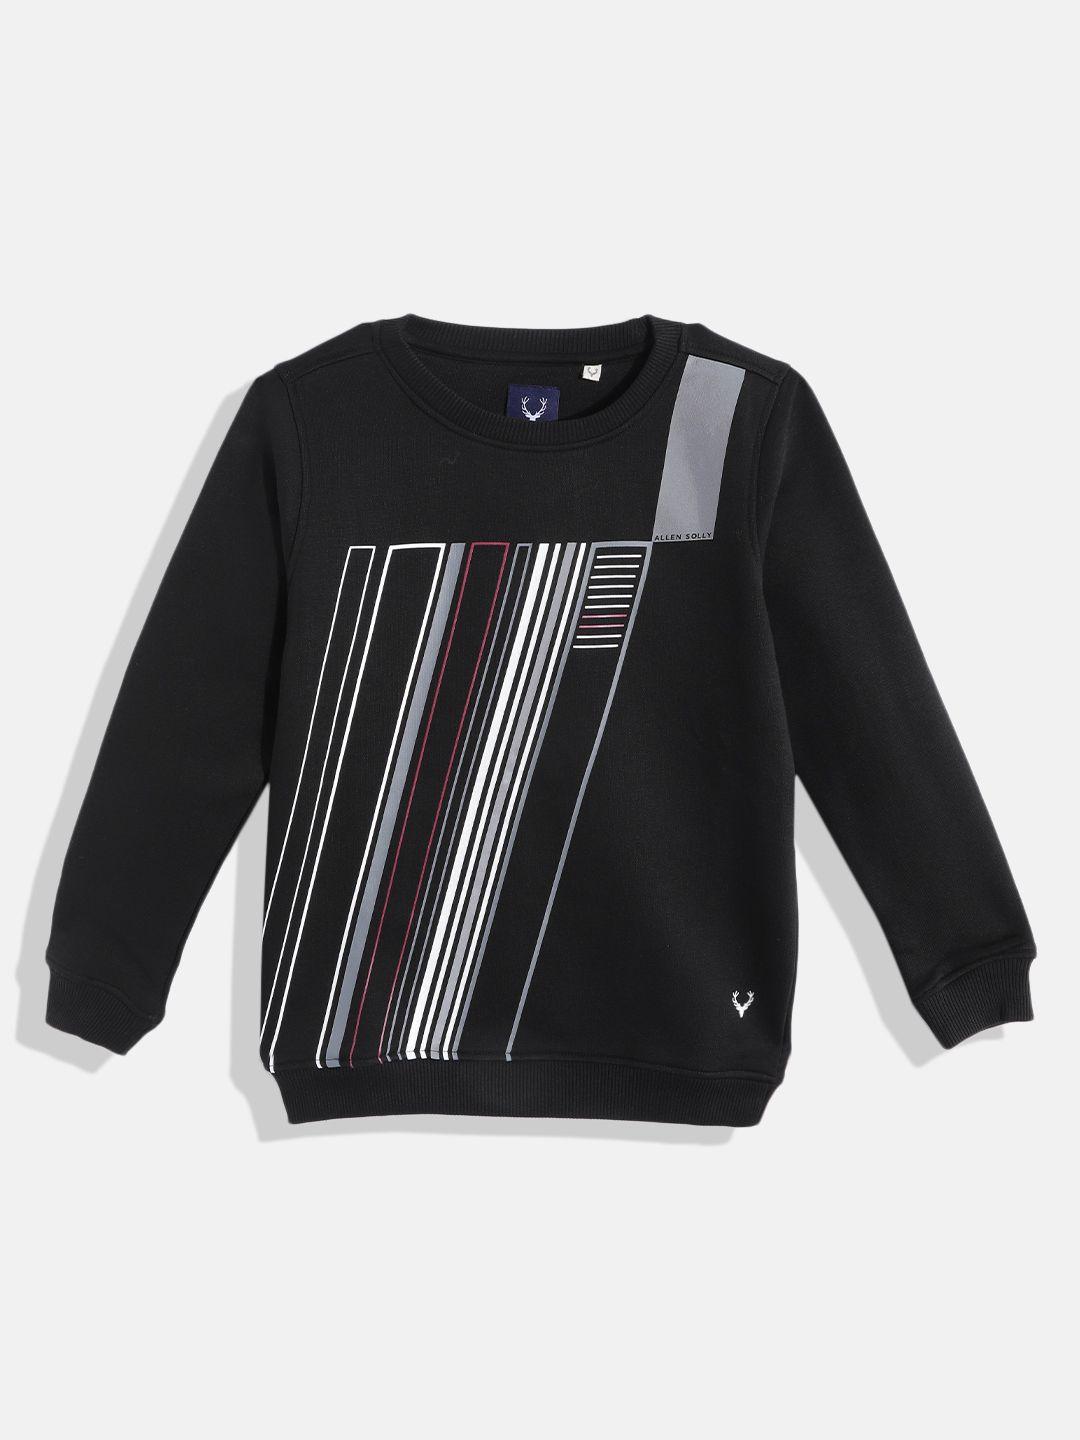 allen solly junior boys black & white striped sweatshirt